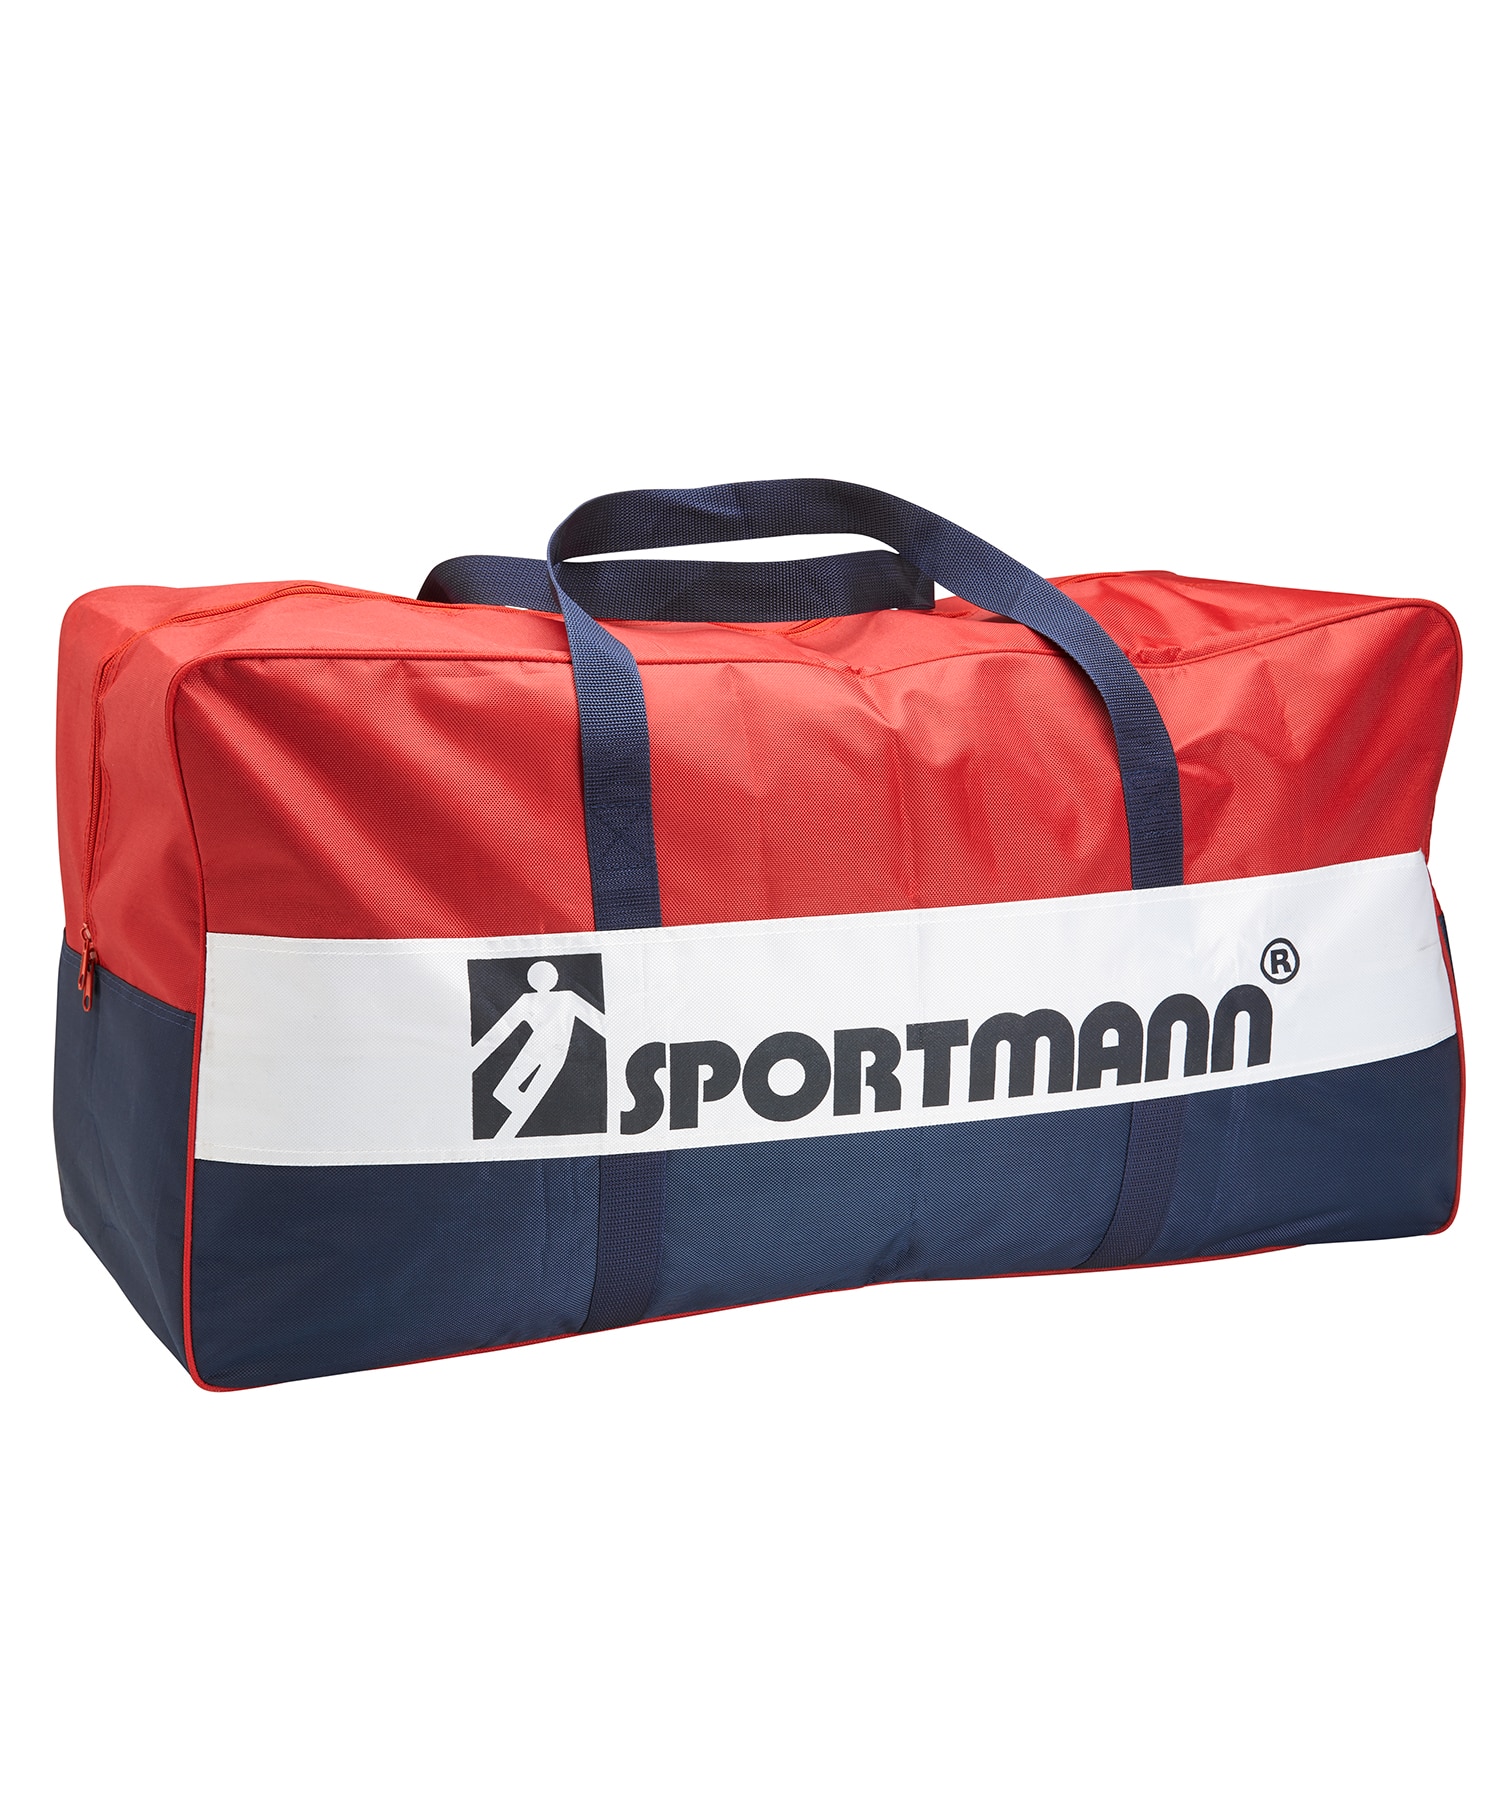 Sportmann bag 90 L